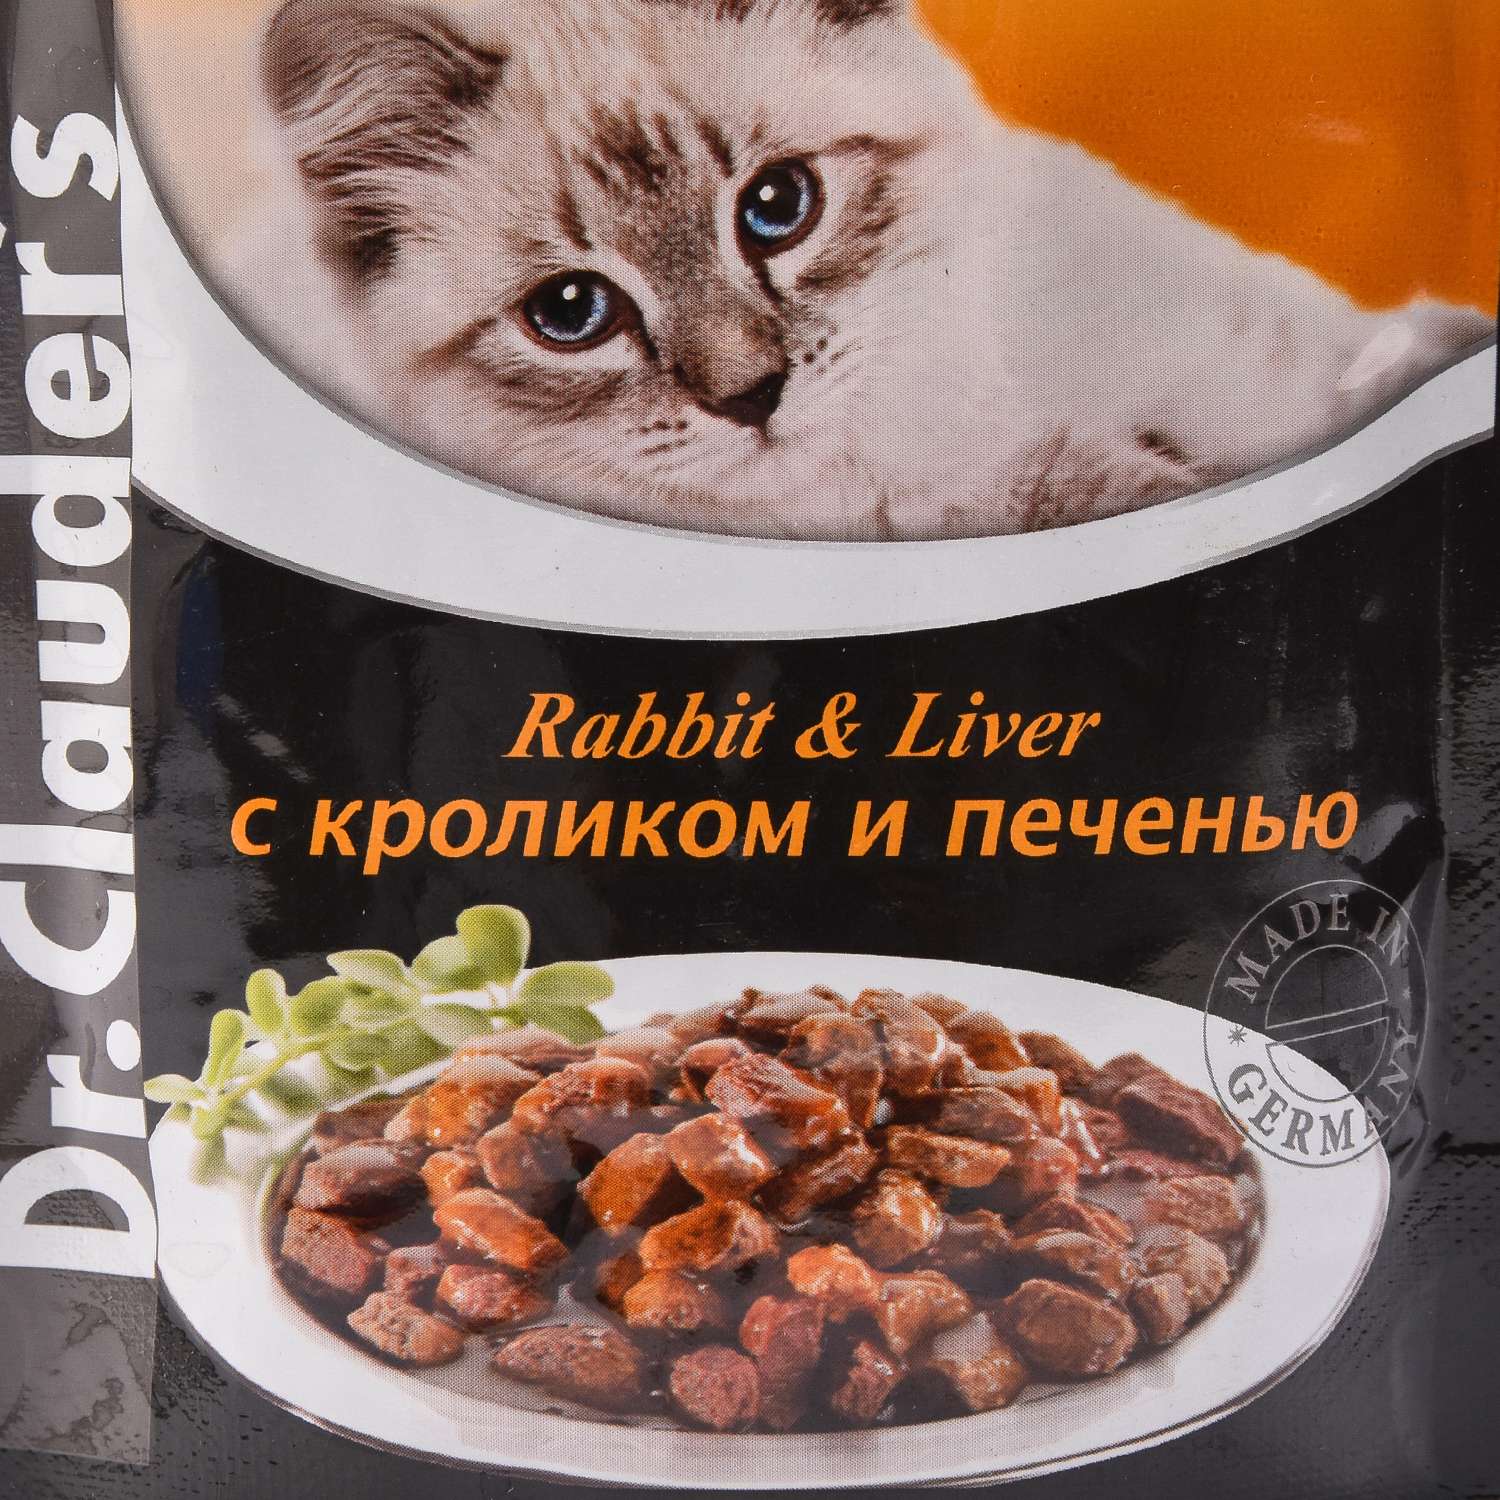 Корм влажный для кошек Dr.Clauders 100г с кроликом и печенью пауч - фото 2